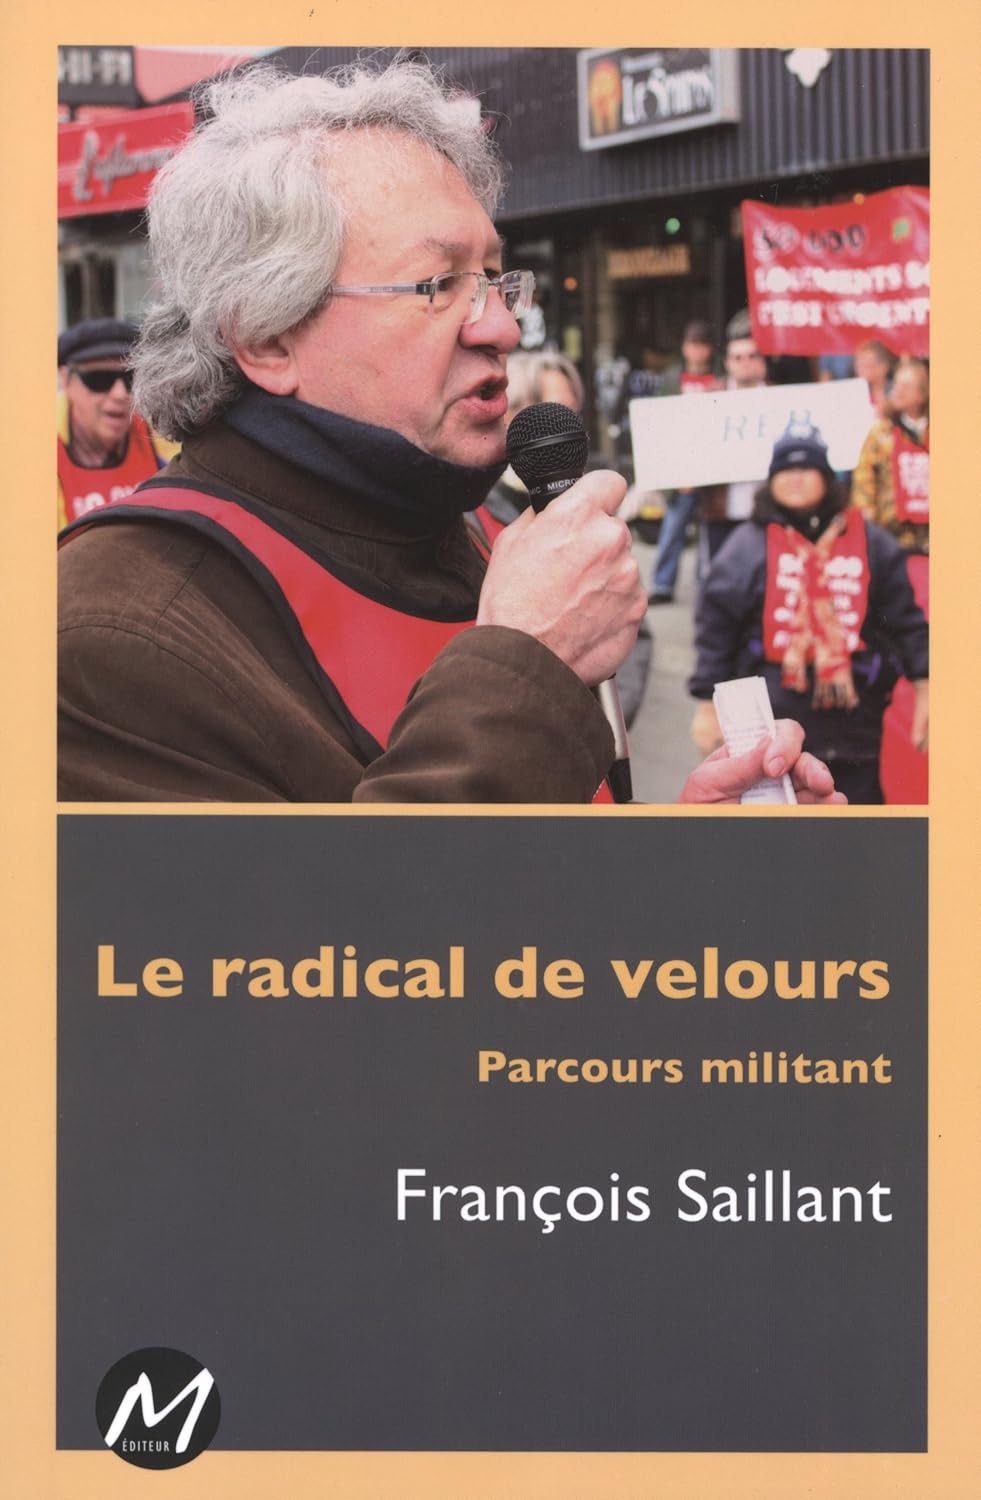 Le radical de velours : Parcours militant - François Saillant